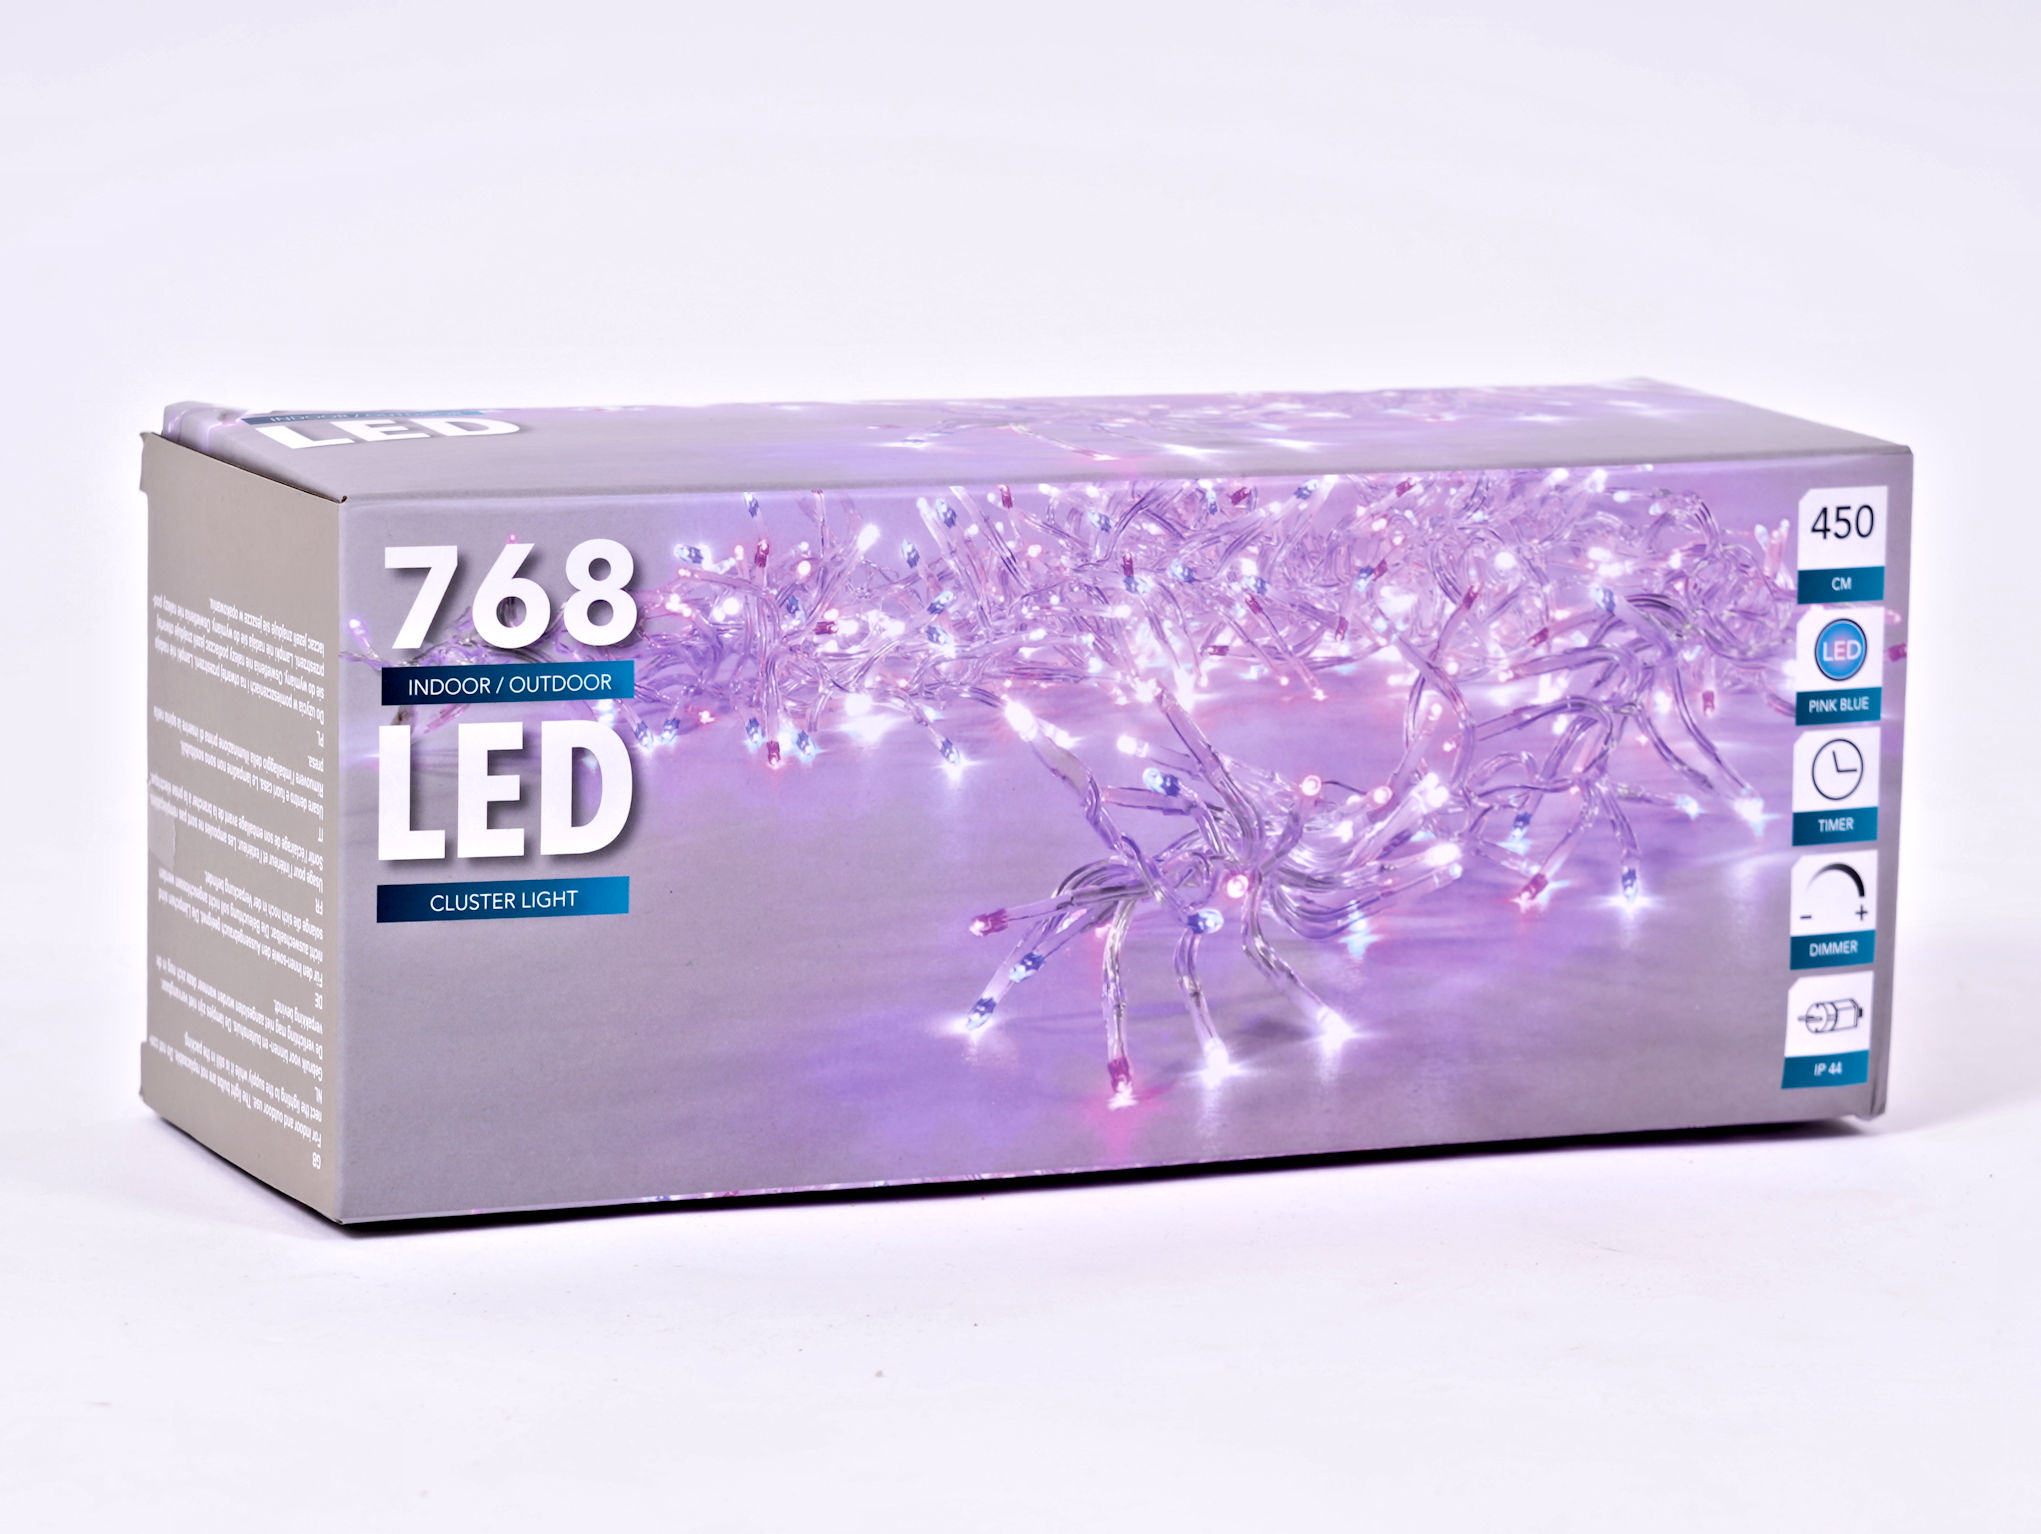 Cluster Light - 768 LED Lichterkette - Farbe: pink/blau - 450 cm